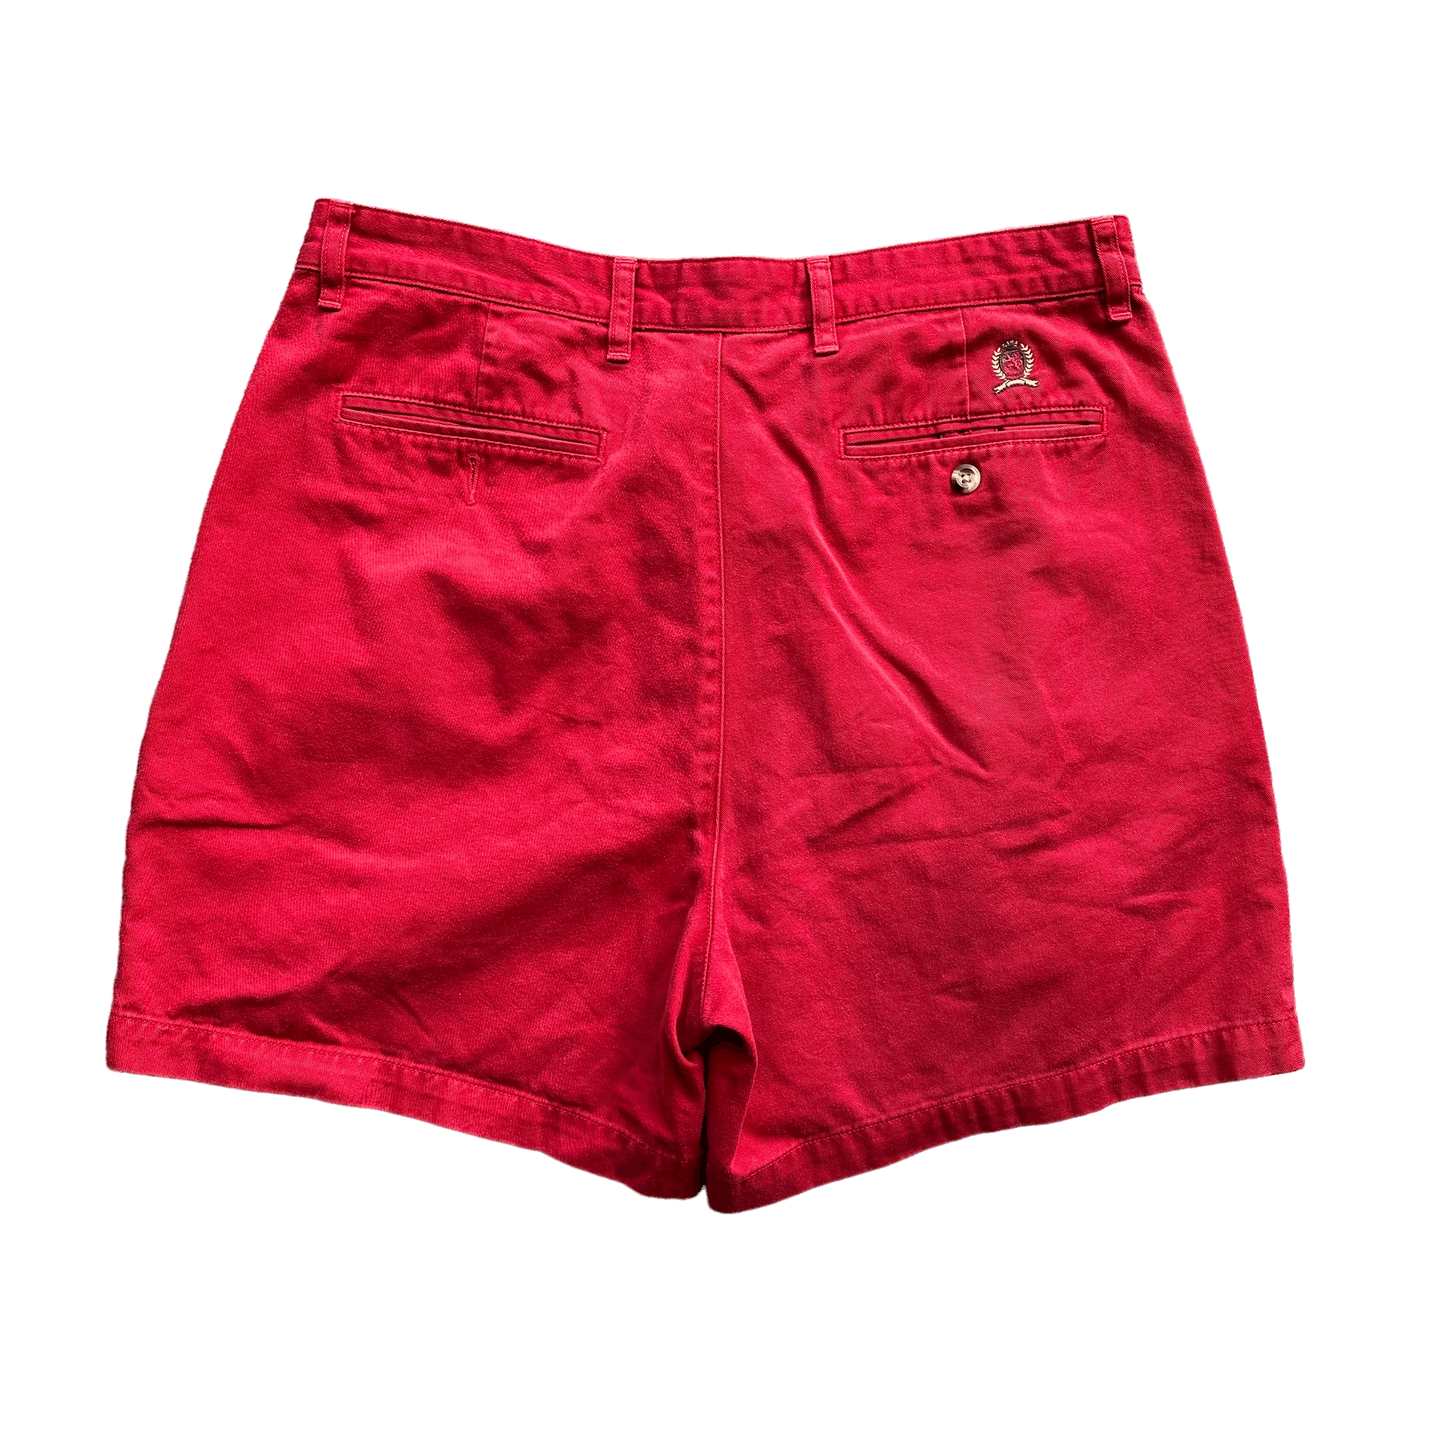 (36) 90s Vintage Red Tommy Hilfiger Shorts